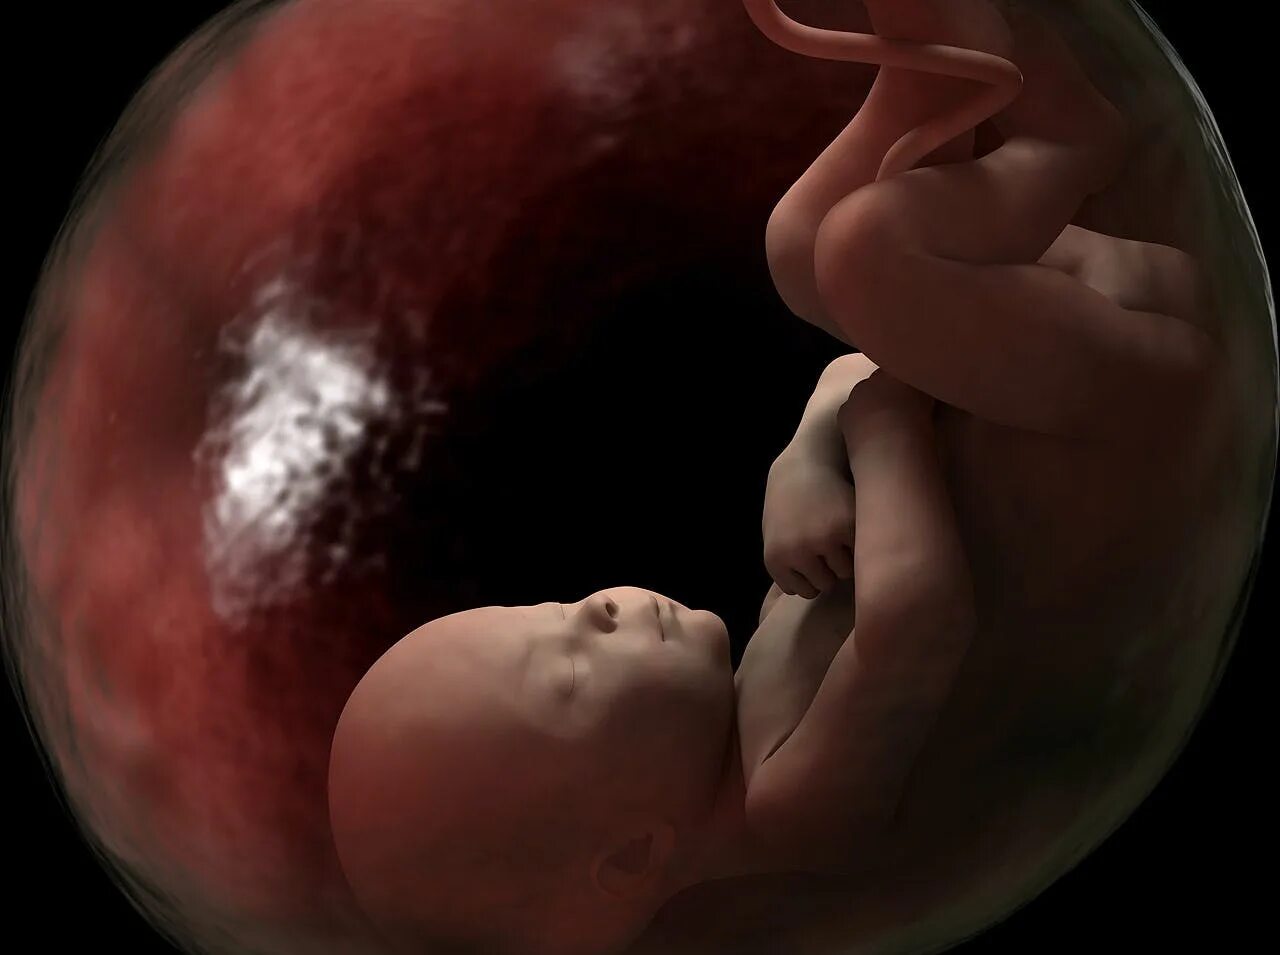 Младенец в утробе матери. Rebenok v ugrobe materi. 36 недель икает